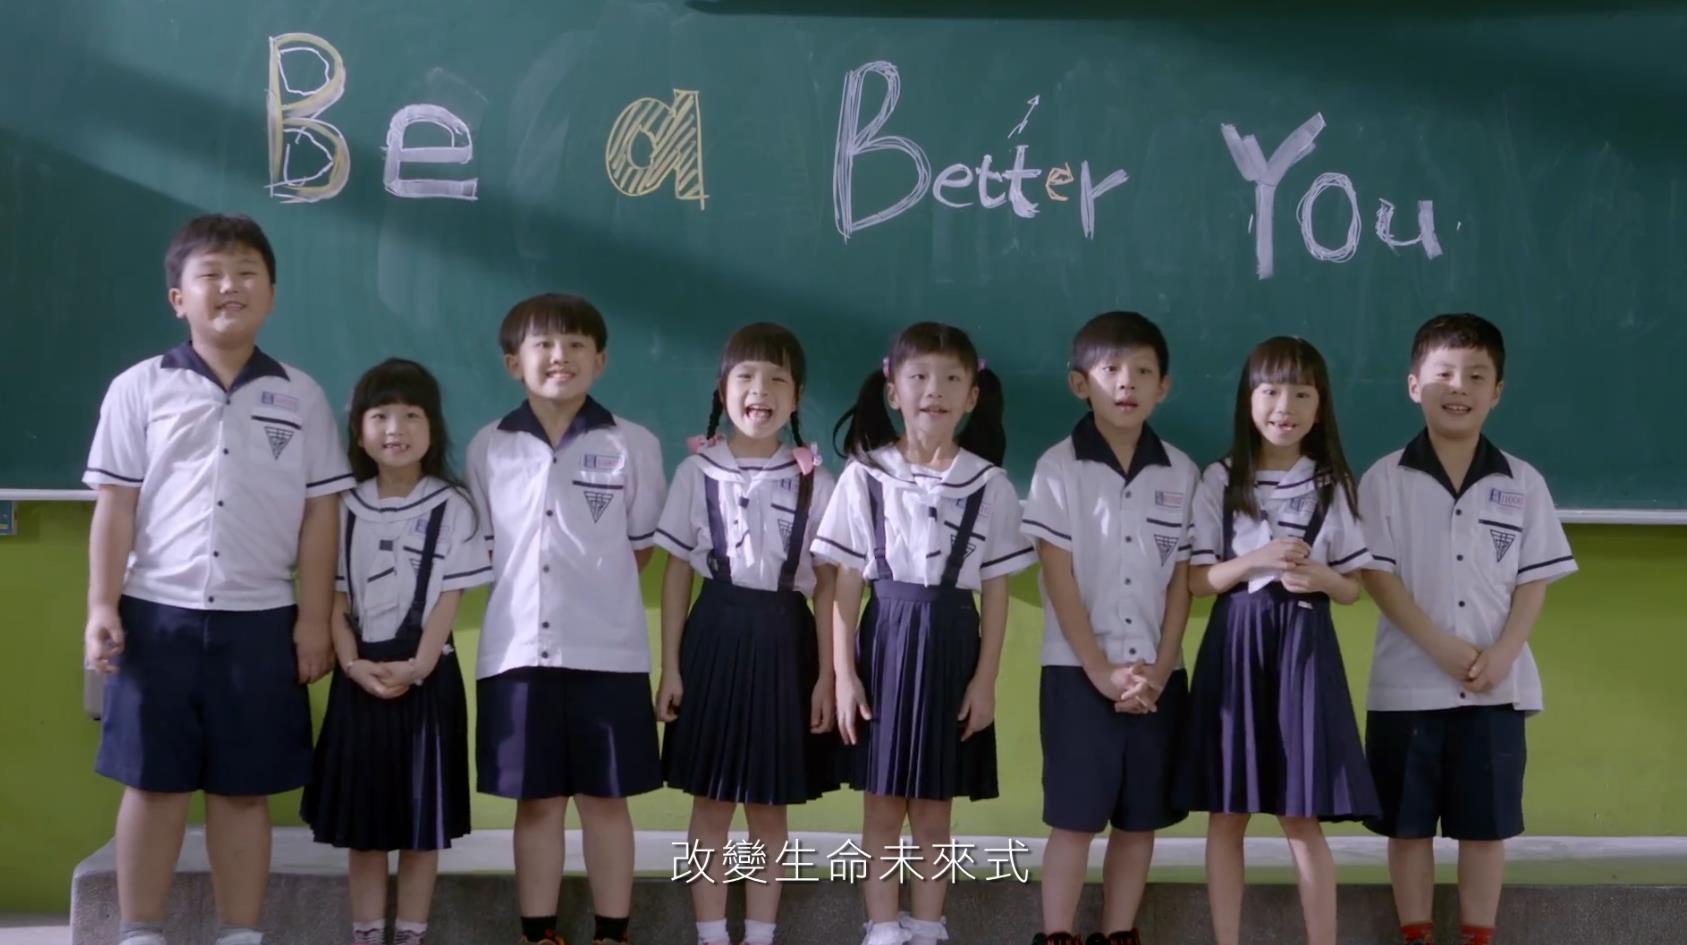 安利品牌宣传广告Be a better you.mp4